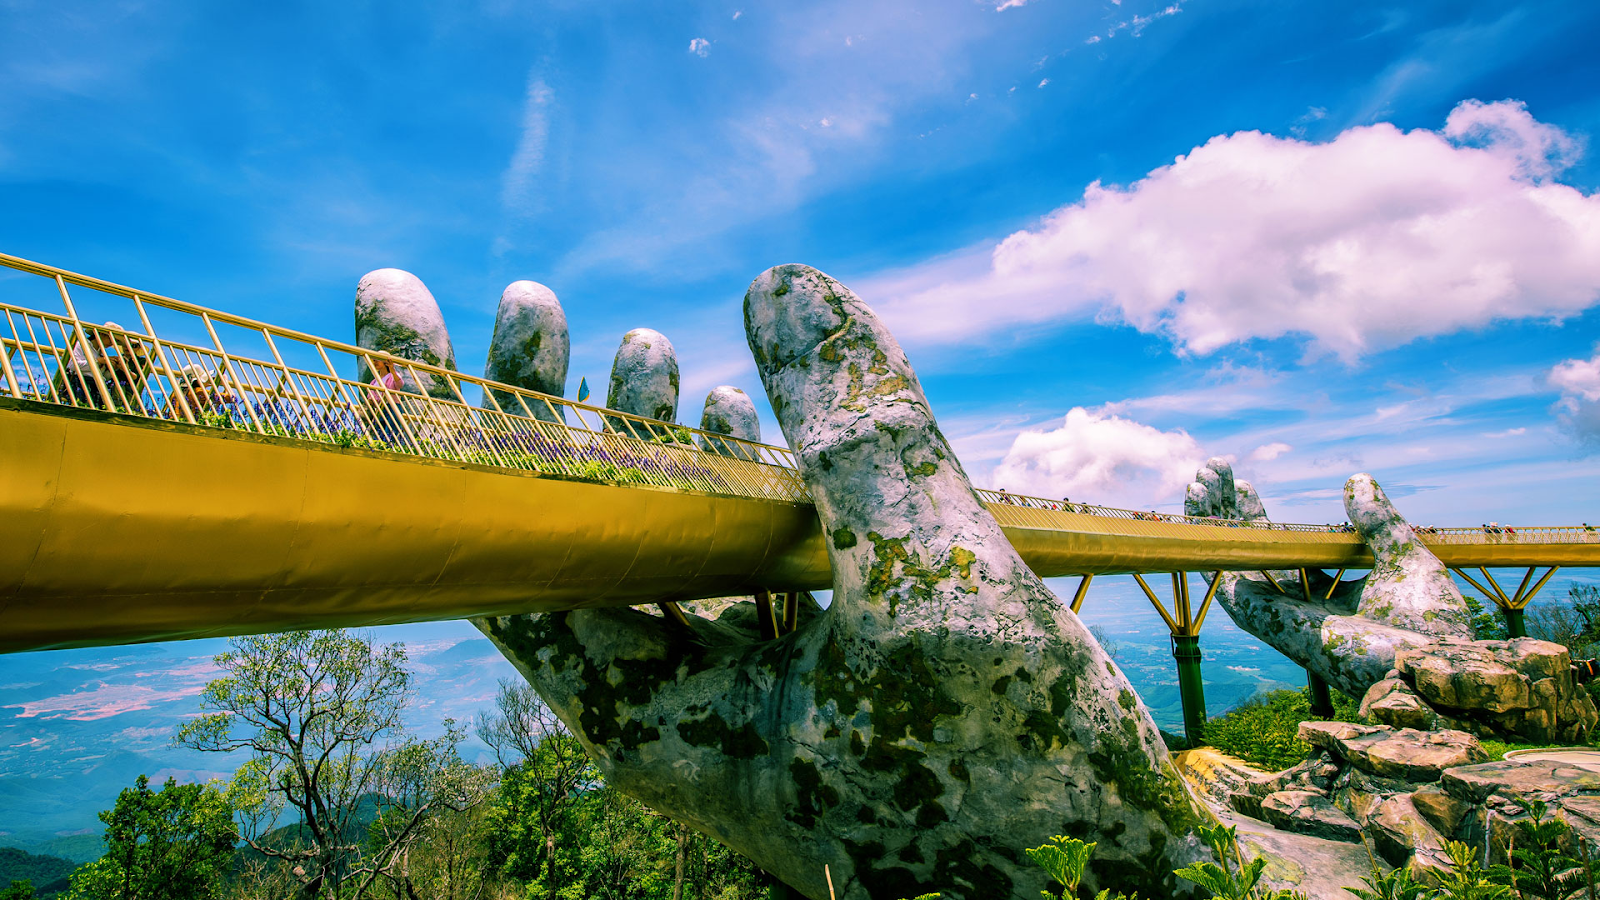 Cầu Vàng Đà Nẵng nổi bật với lối kiến trúc độc đáo, sáng tạo giữa trời xanh, cây cỏ hữu tình